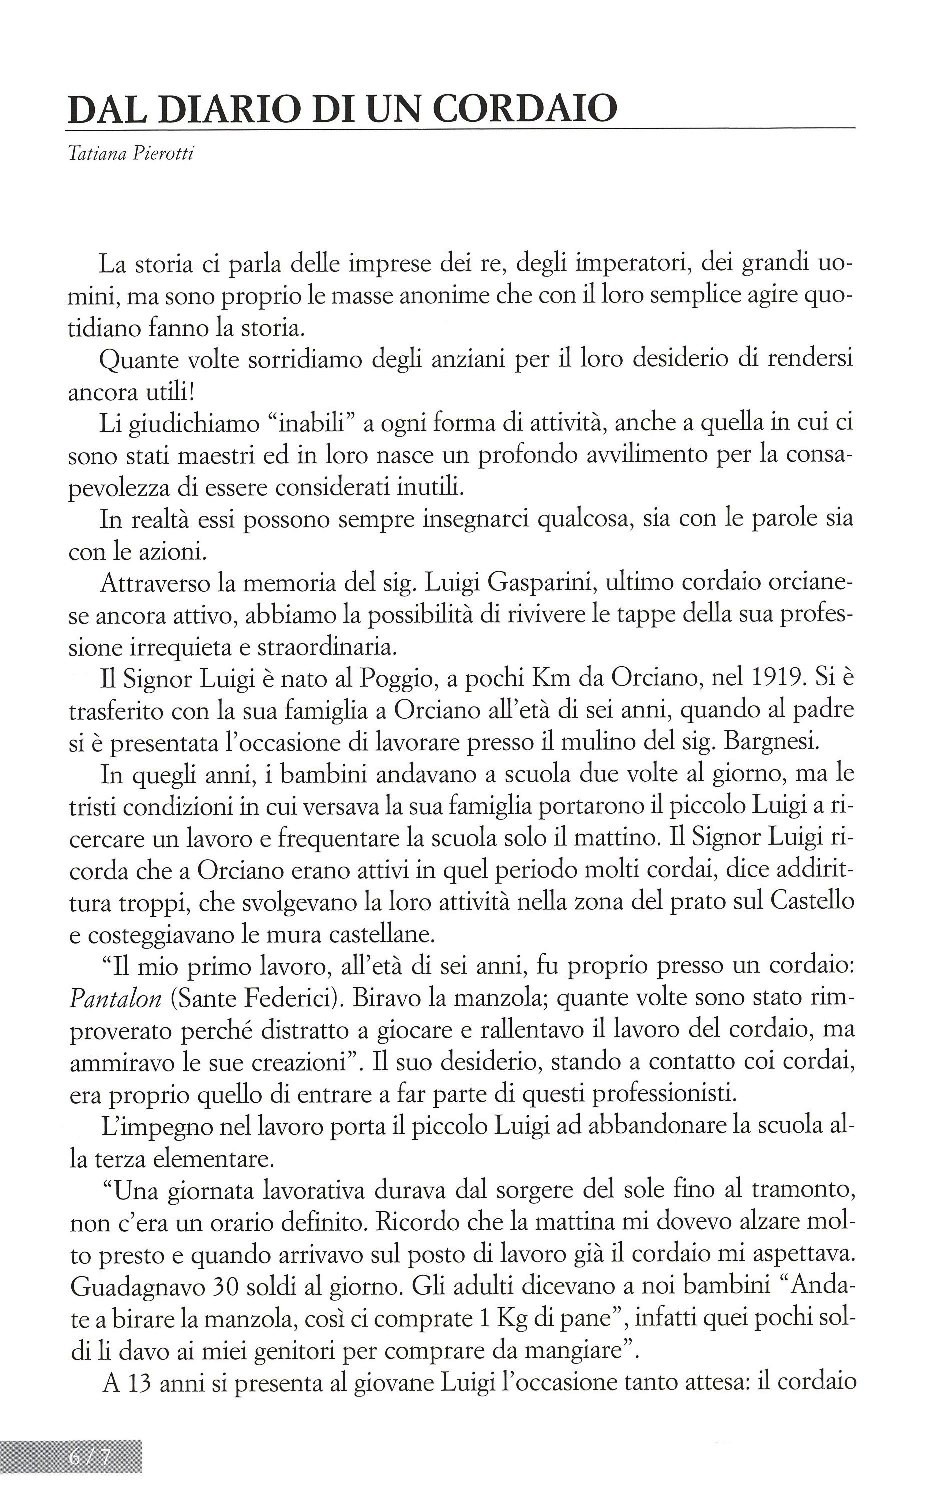 La torr i arduna tutti 2006 p.006